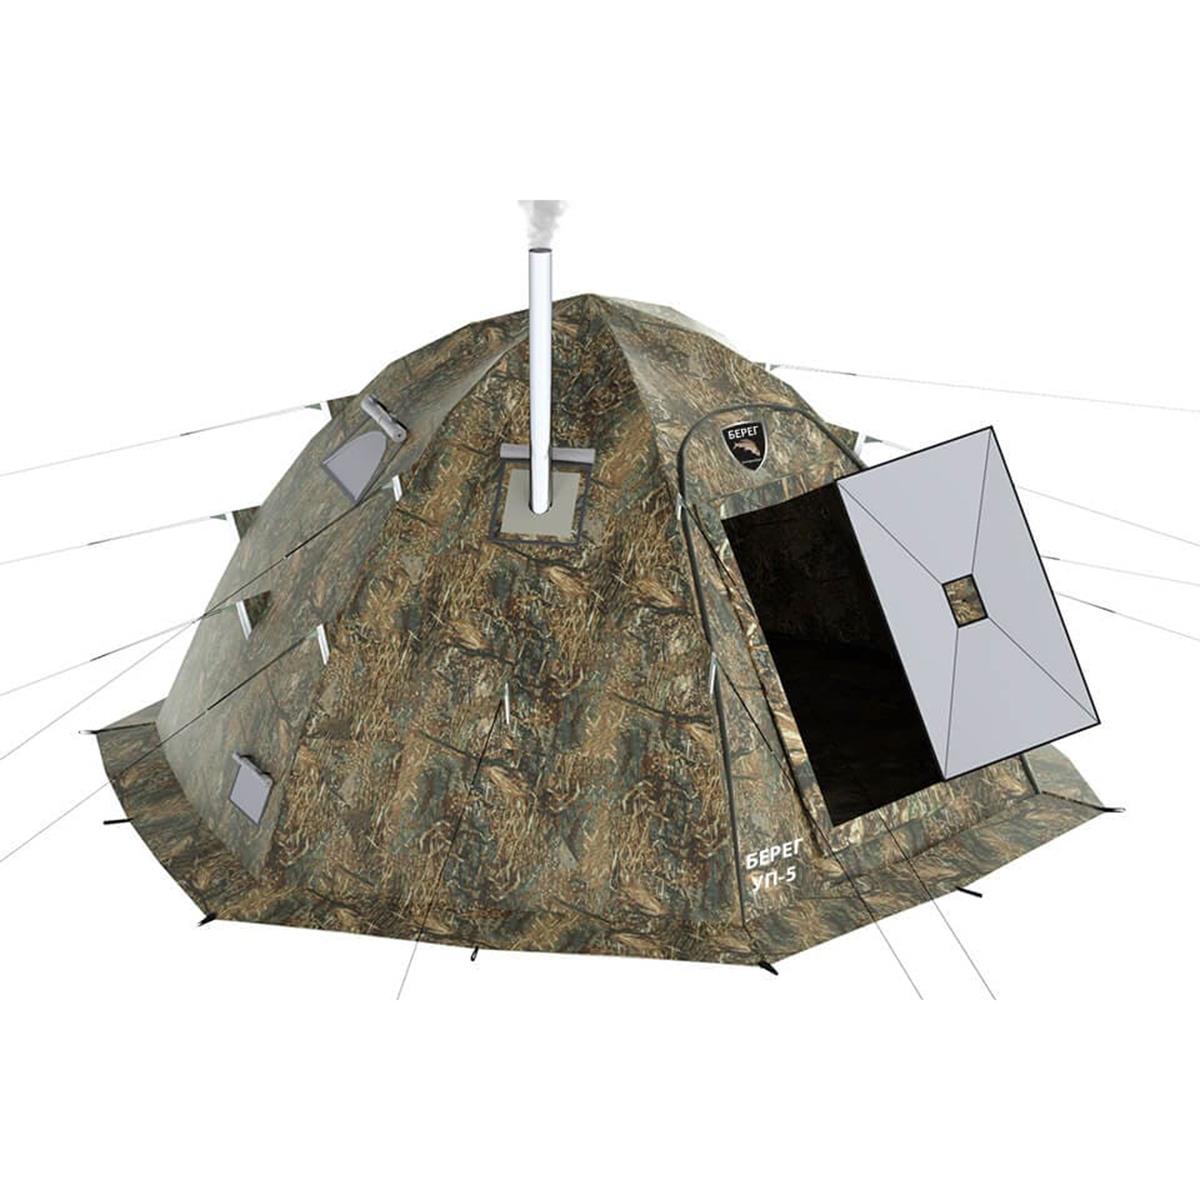 Универсальная палатка УП-5 Камыш Берег металлические оцинкованные колышки комплект агро